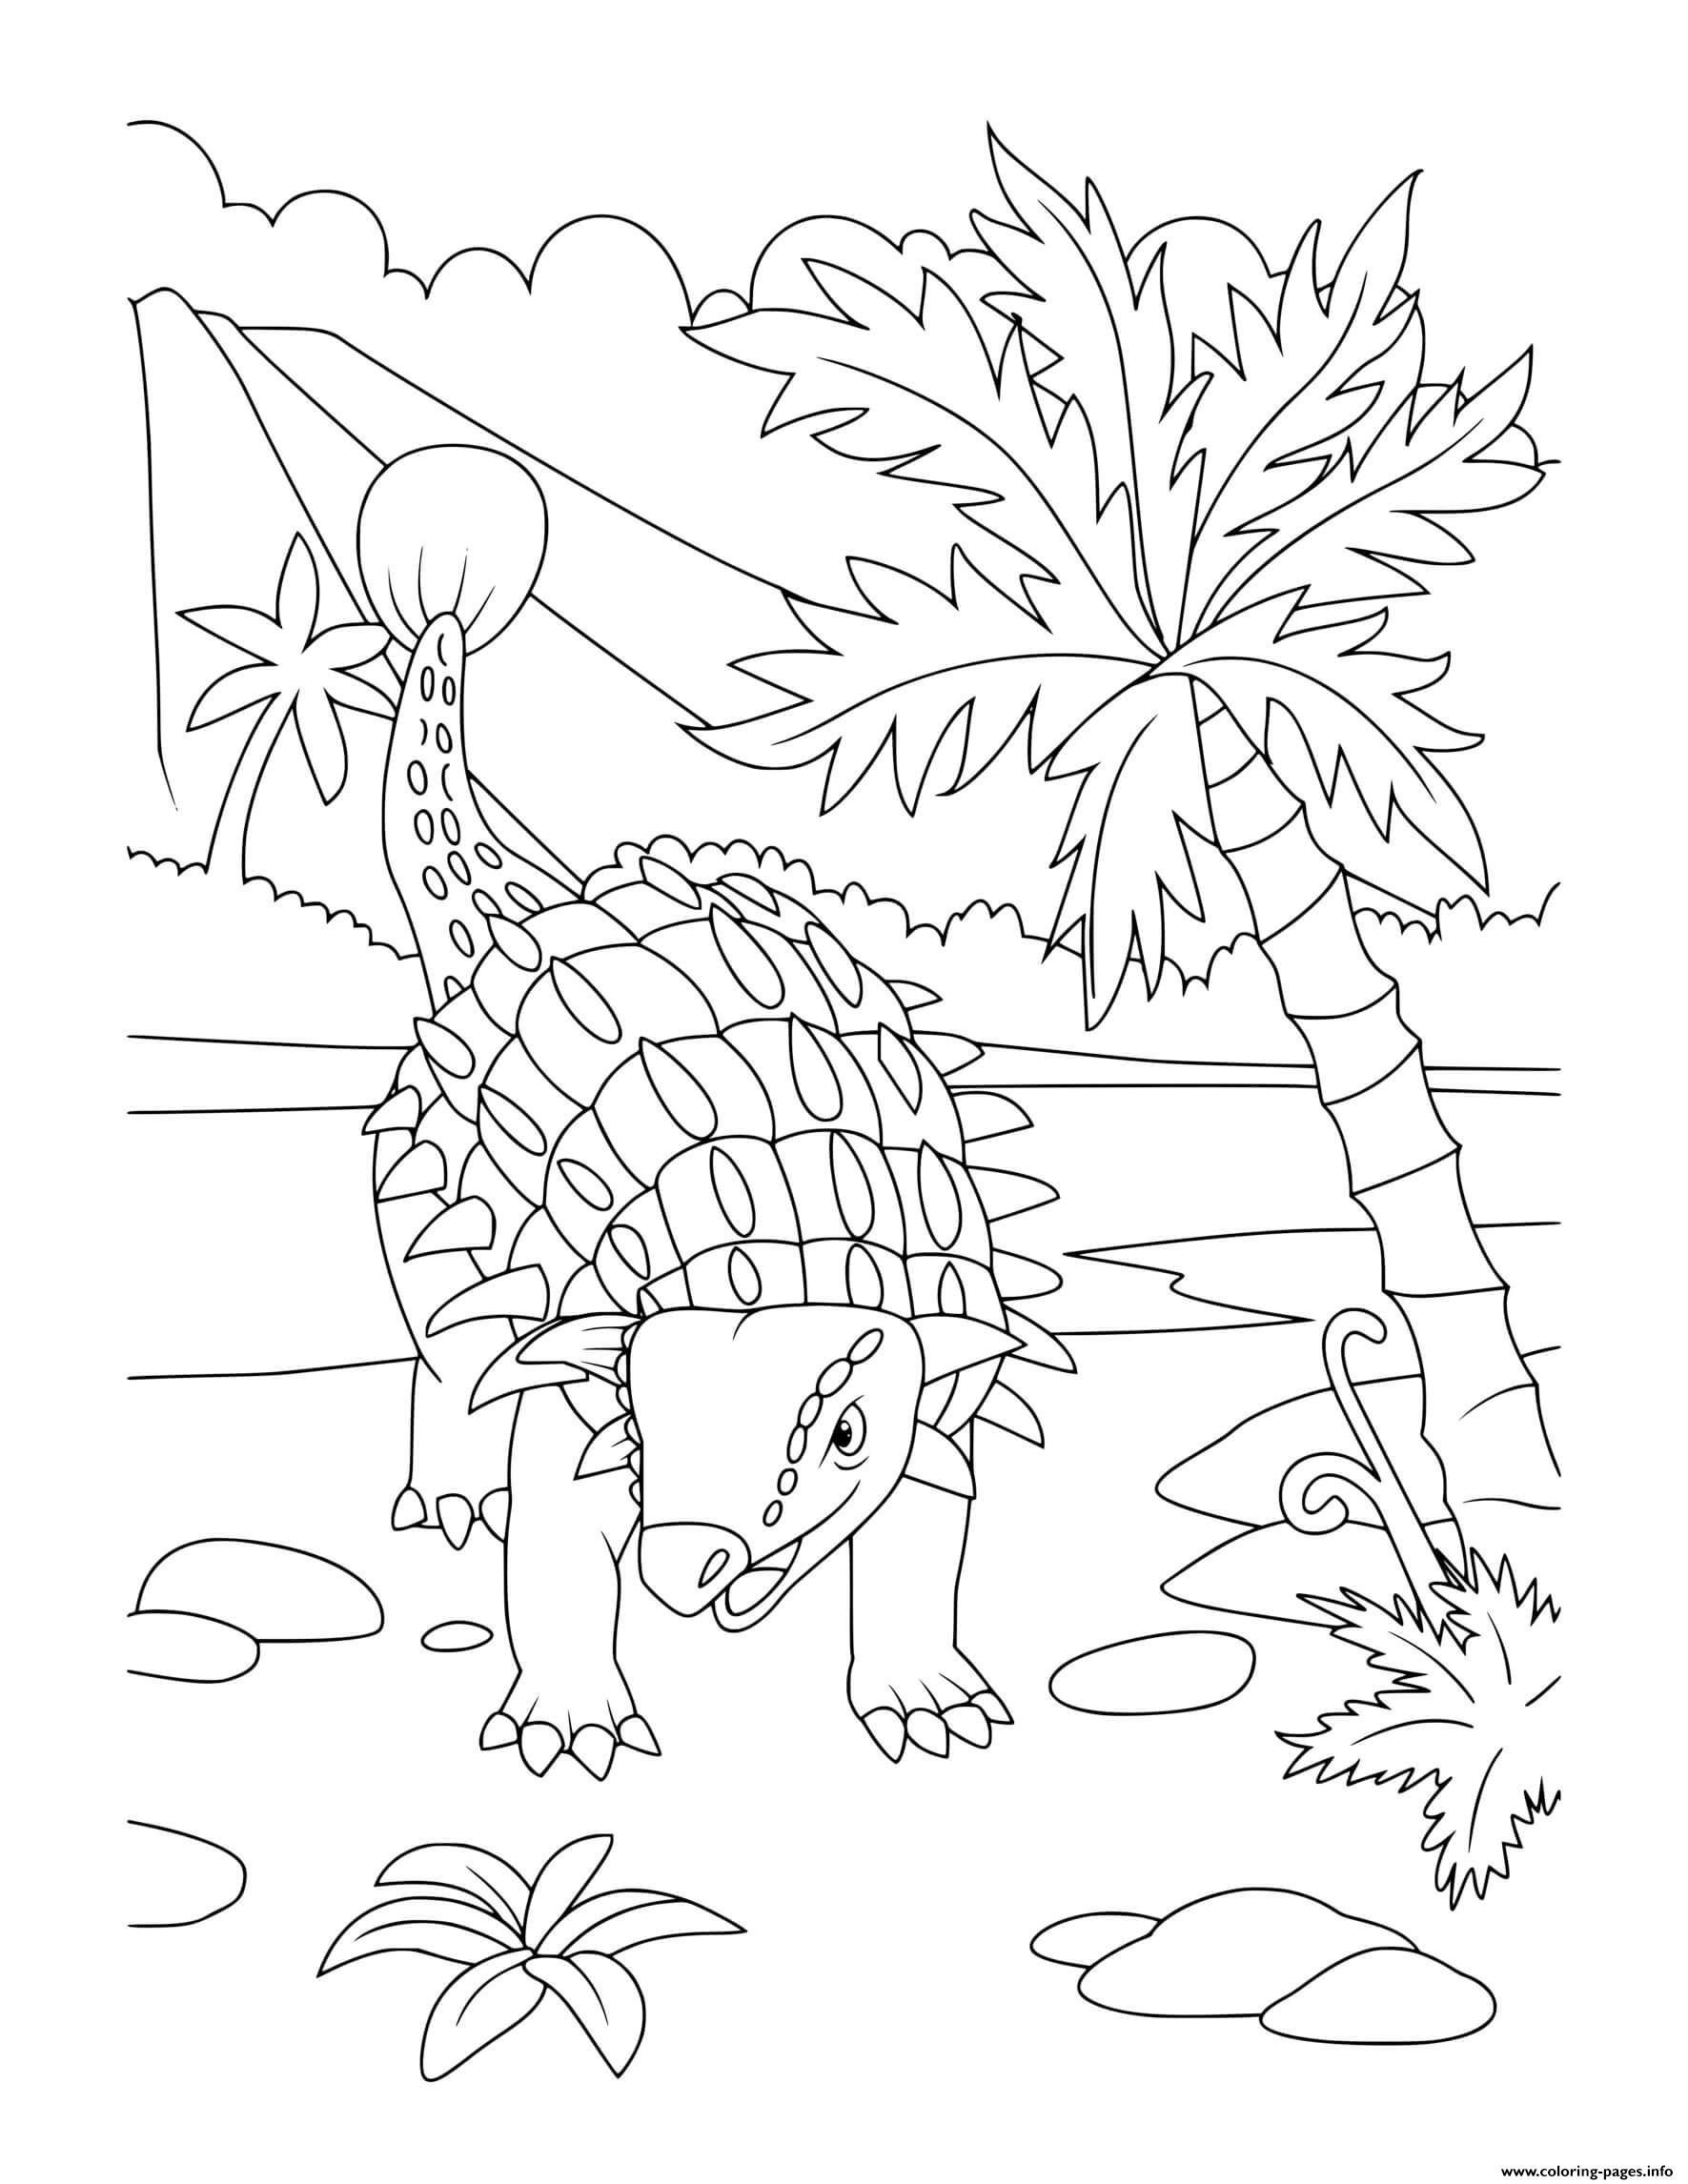 Dinosaur Ankylosaurs Near Volcano And Trees coloring